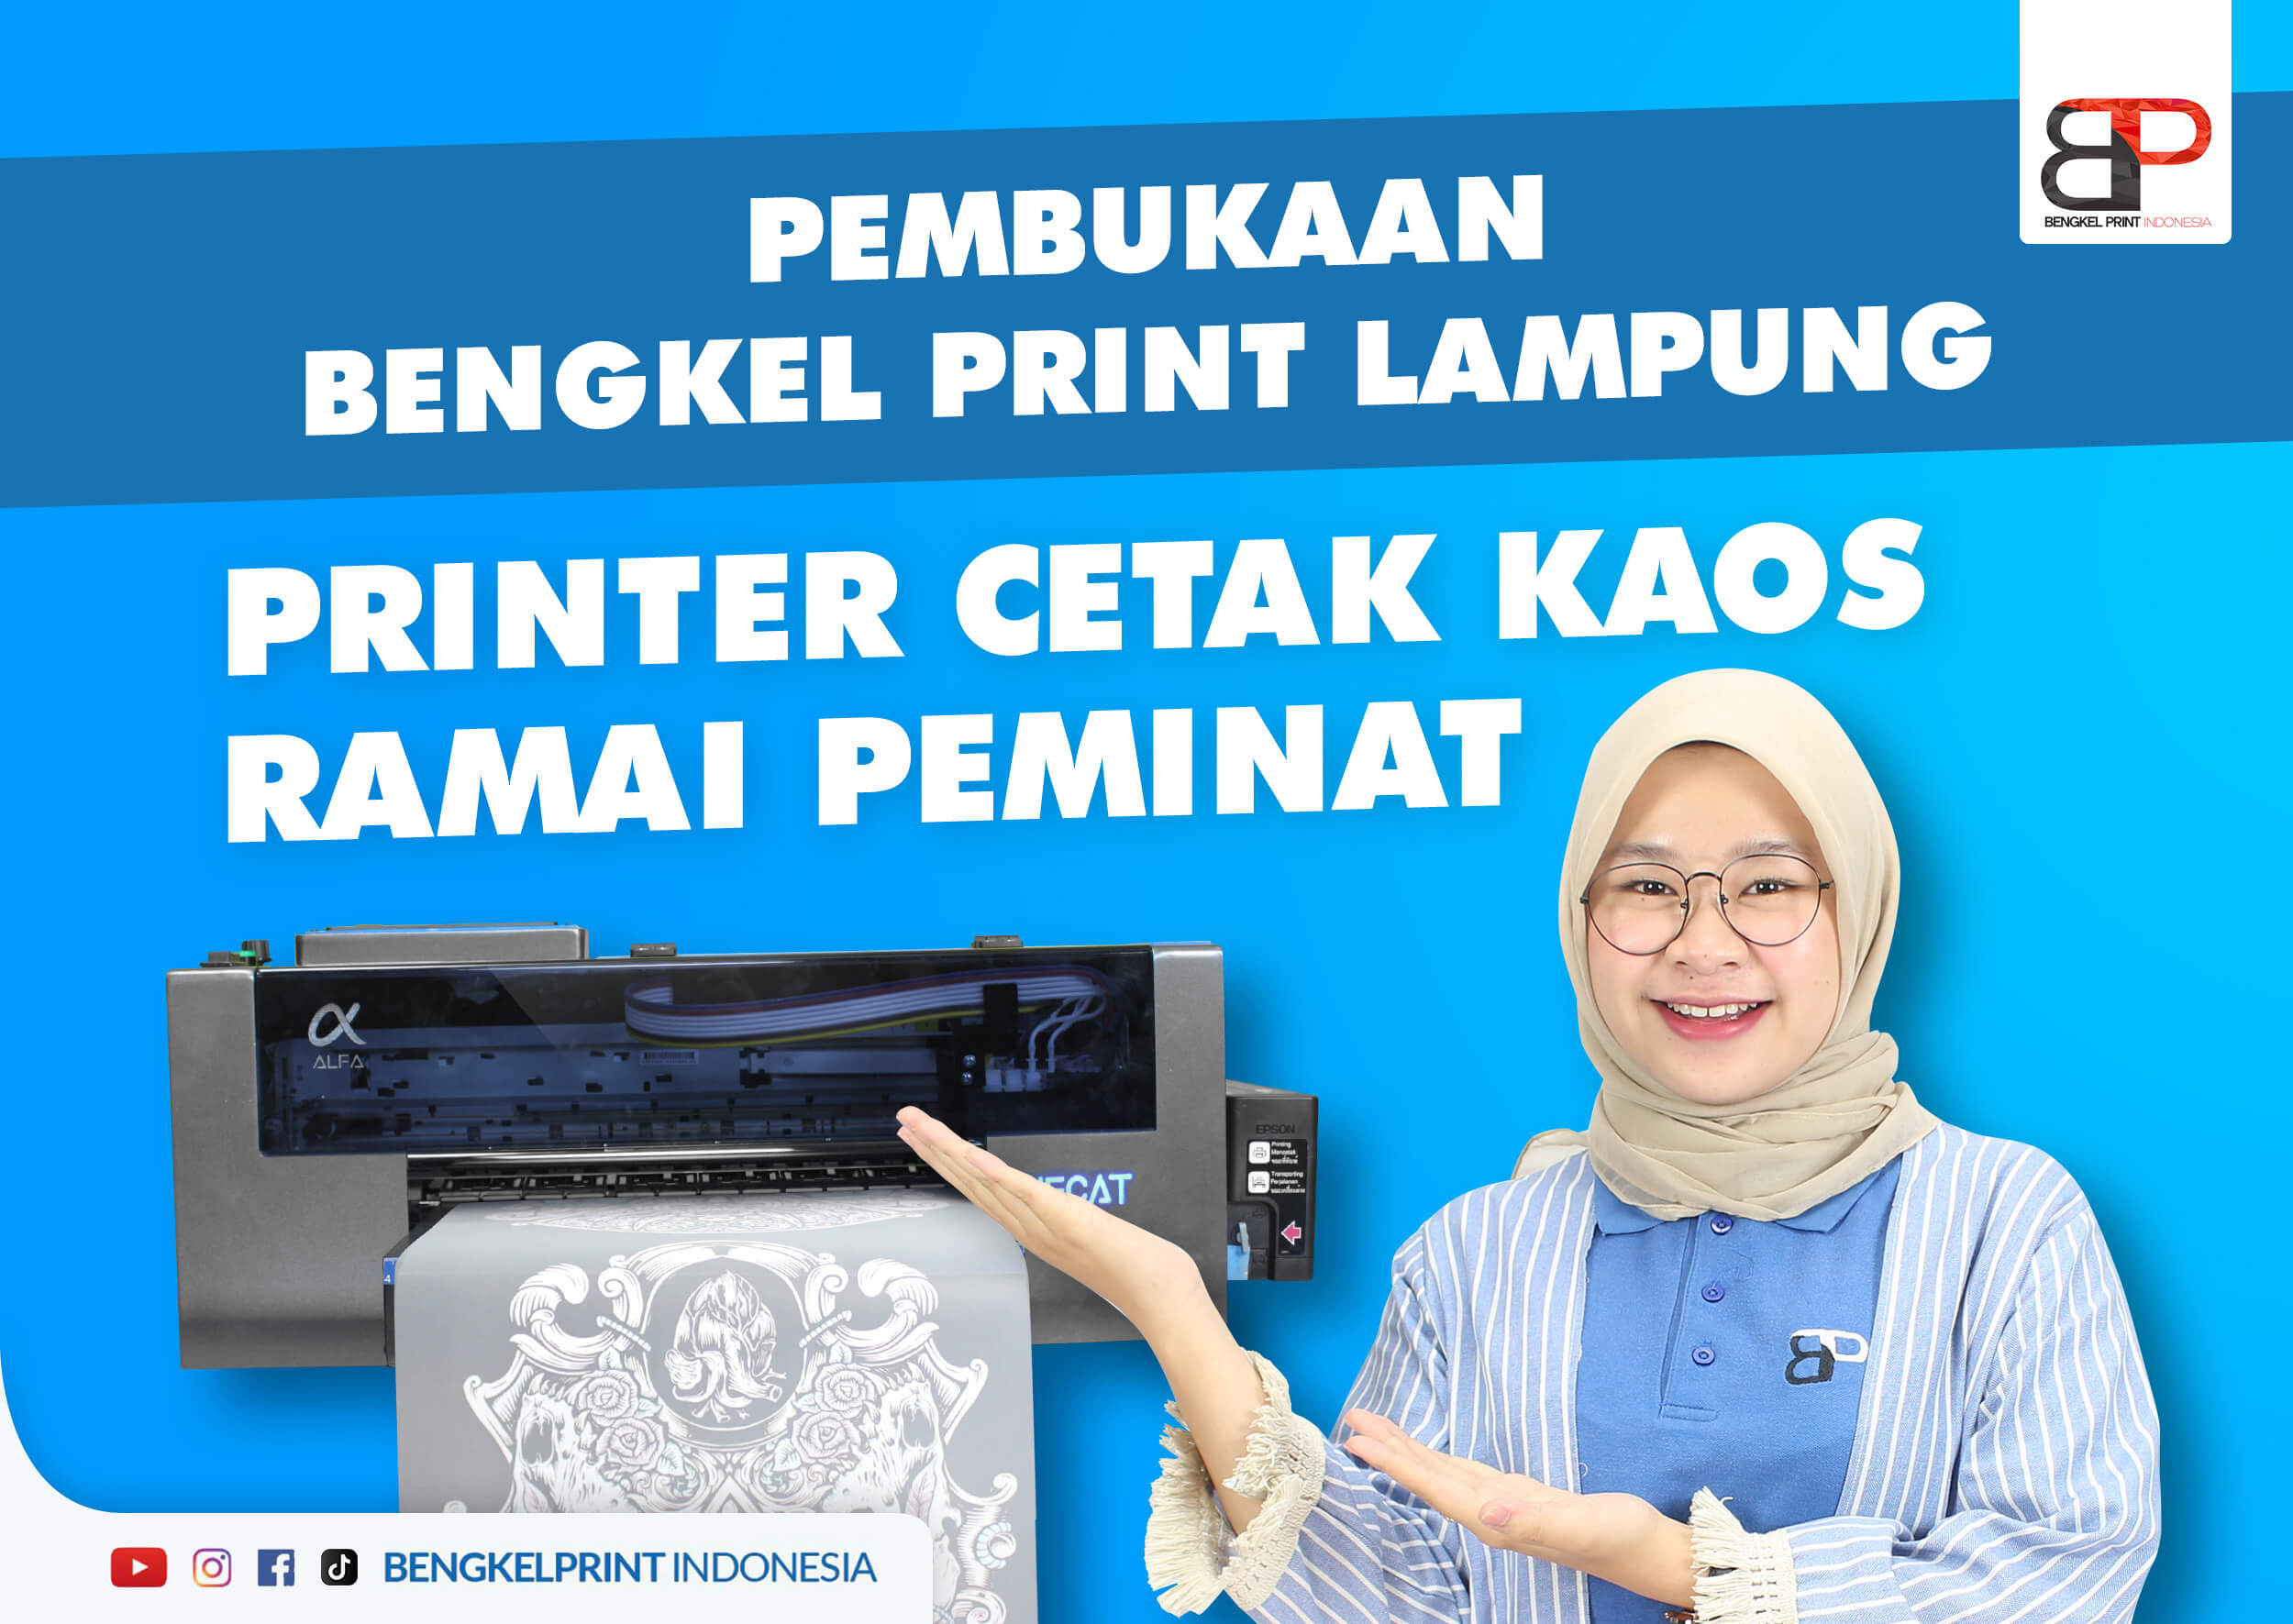 Distributor Bengkel Print Lampung